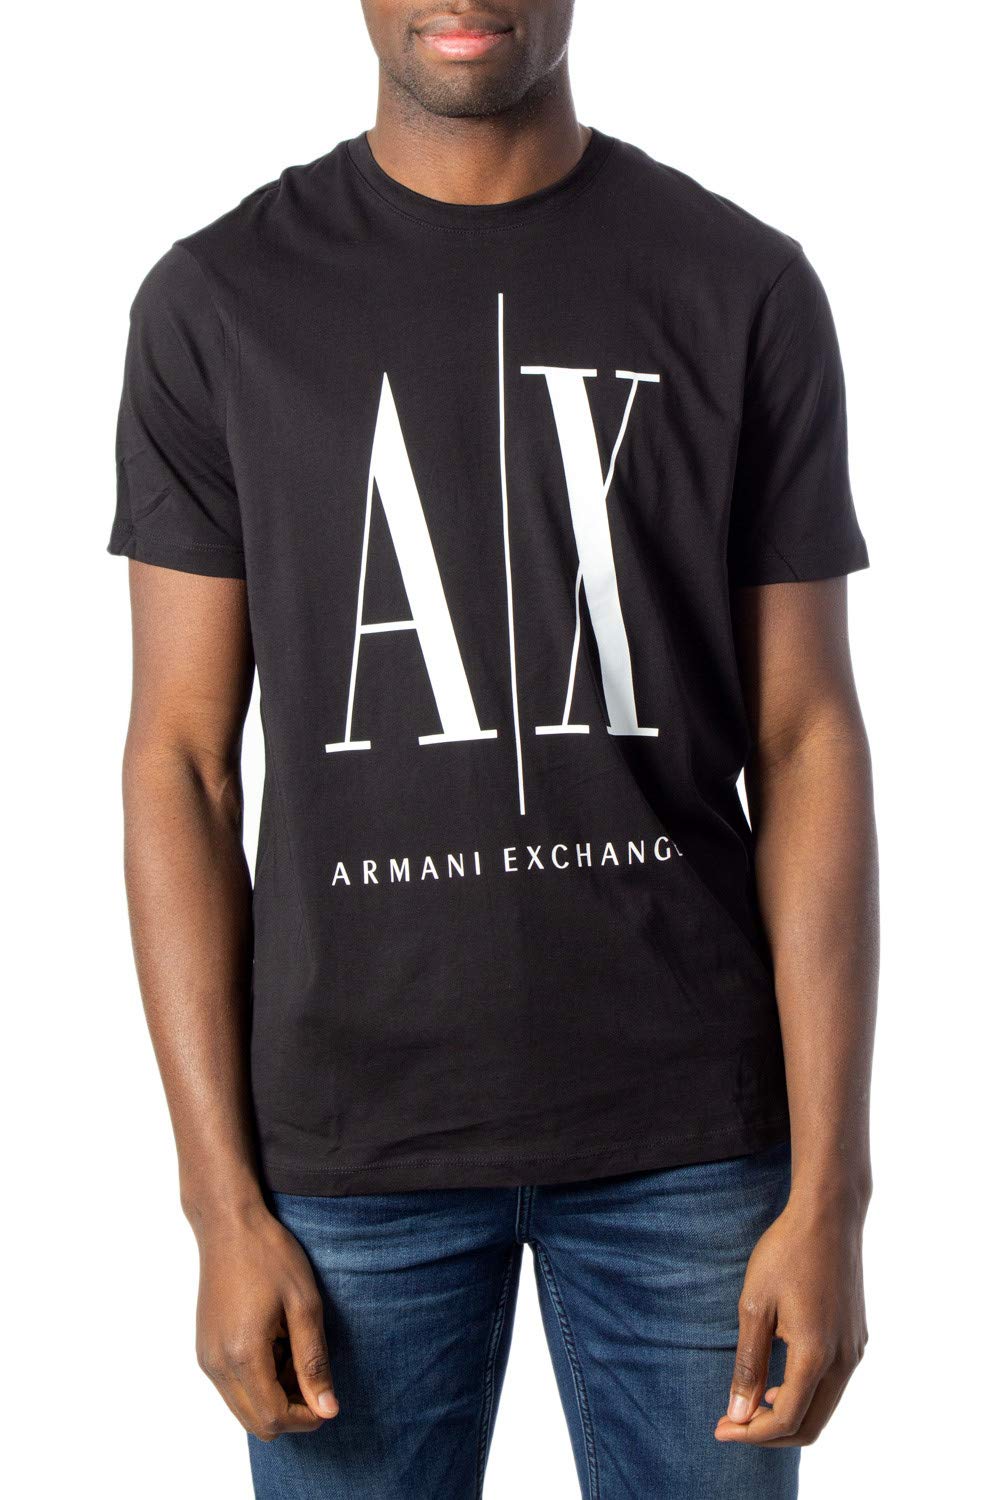 Armani Exchange Herren T-shirt 8nztpazjh4z T-Shirt, Schwarz, M